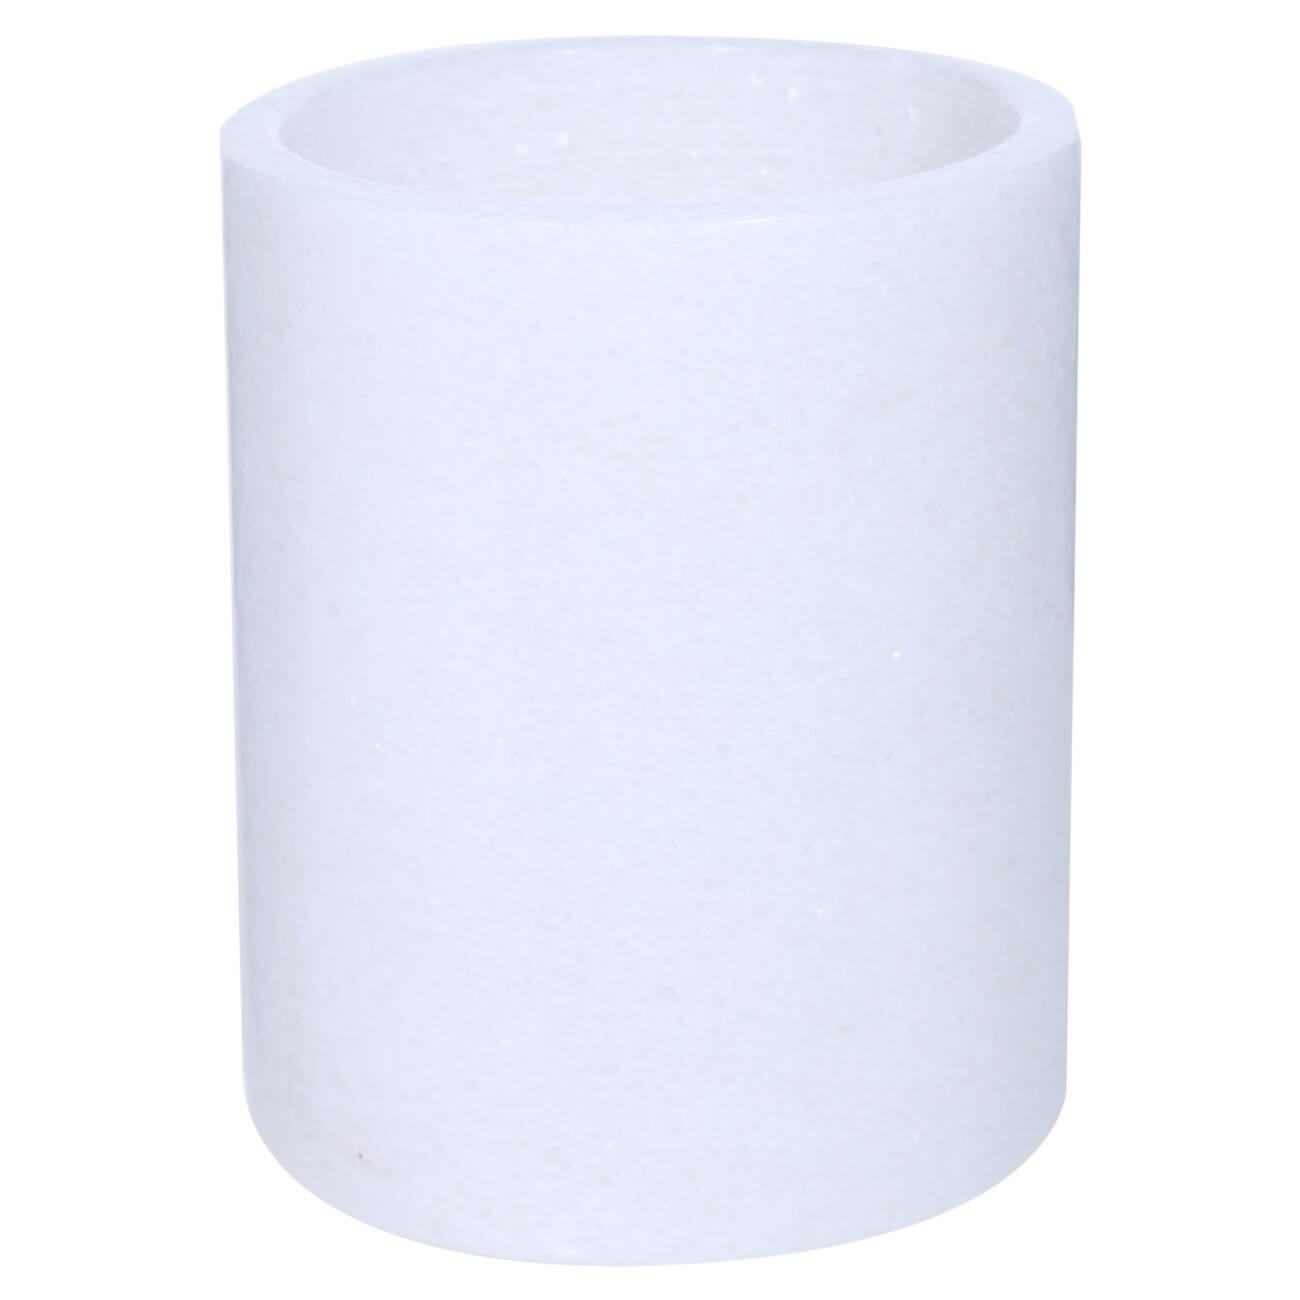 Подставка для кухонных принадлежностей, 13 см, мрамор, белая, Classic Marble поднос 30x20 см с ручками мрамор прямоугольный белый золотистый marble